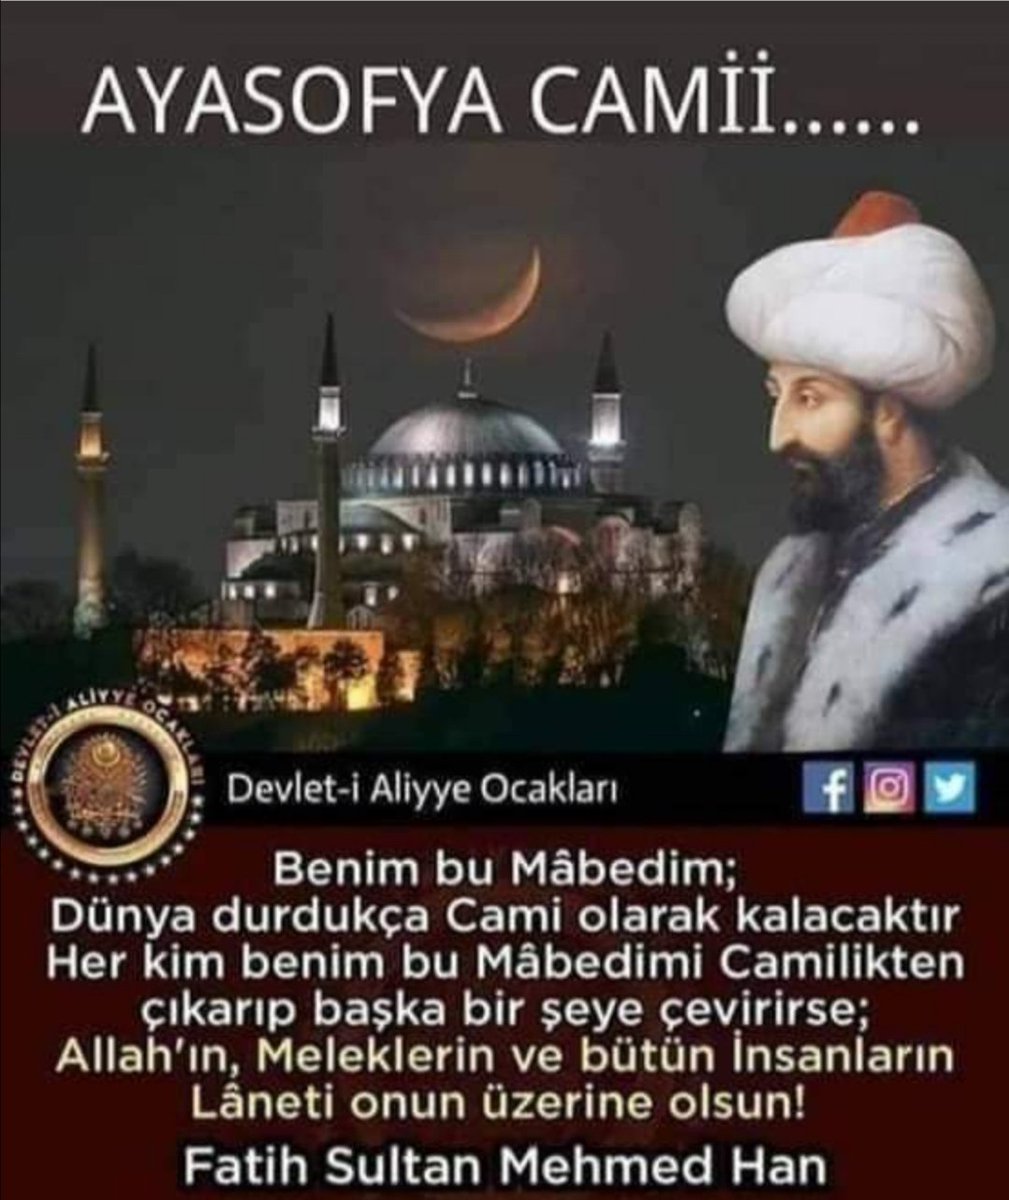 Senin mabedine torunların her zaman sahip çıkacaktır Atamız Fatih Sultan Mehmet Han emanetiniz başımızın tacıdır 🇹🇷🇹🇷🇹🇷🇹🇷🇹🇷🇹🇷#KurbanOlurumAyasofya #AyasofyaCamiOldu #AyasofyaCamiOldu #AyasofyaCamiOldu